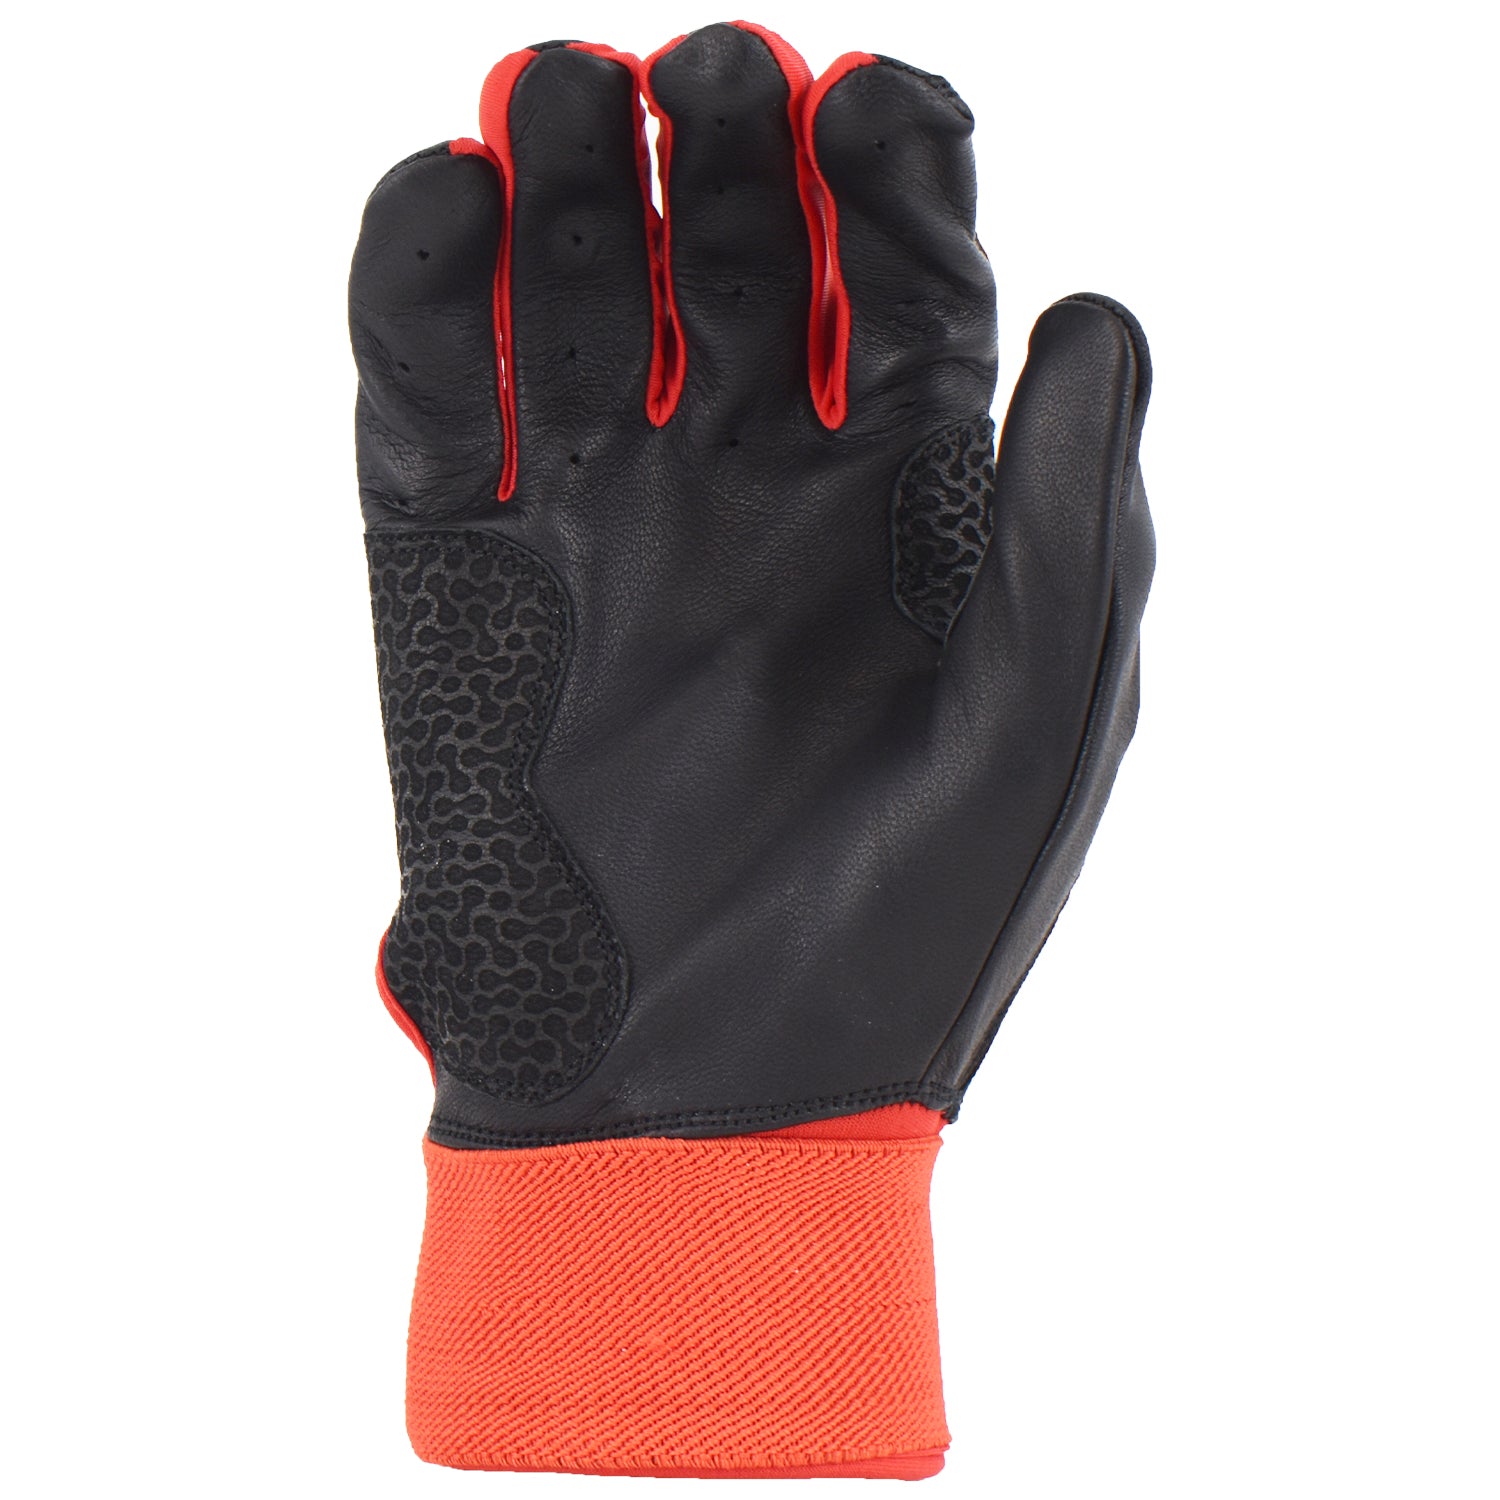 Viper Grindstone Long Cuff Batting Glove - Black/Red